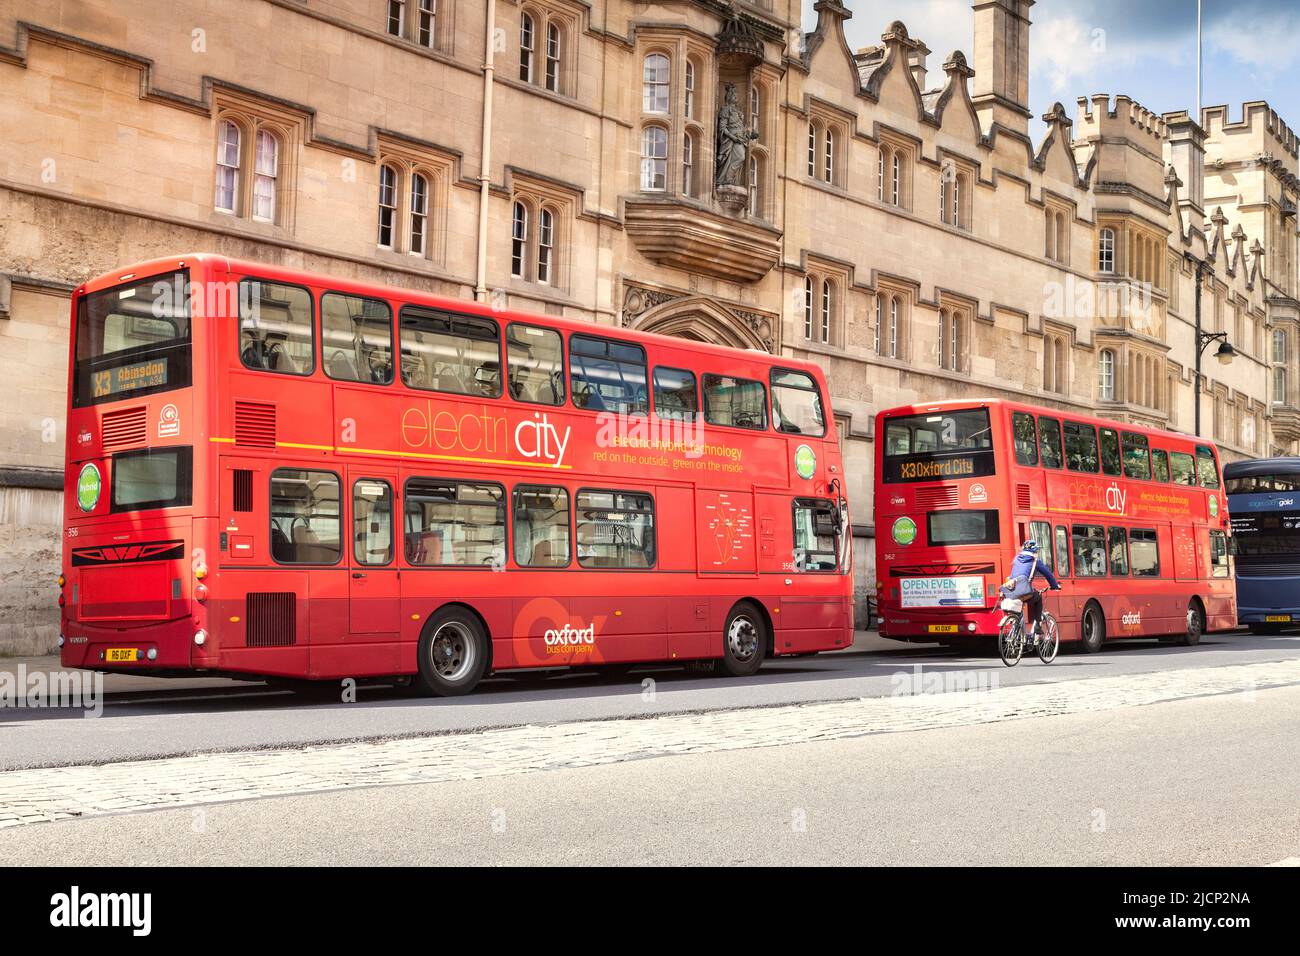 6 giugno 2019: Oxford, UK - autobus ibridi a due piani elettrici in High Street, con un ciclista che passa vicino. Foto Stock